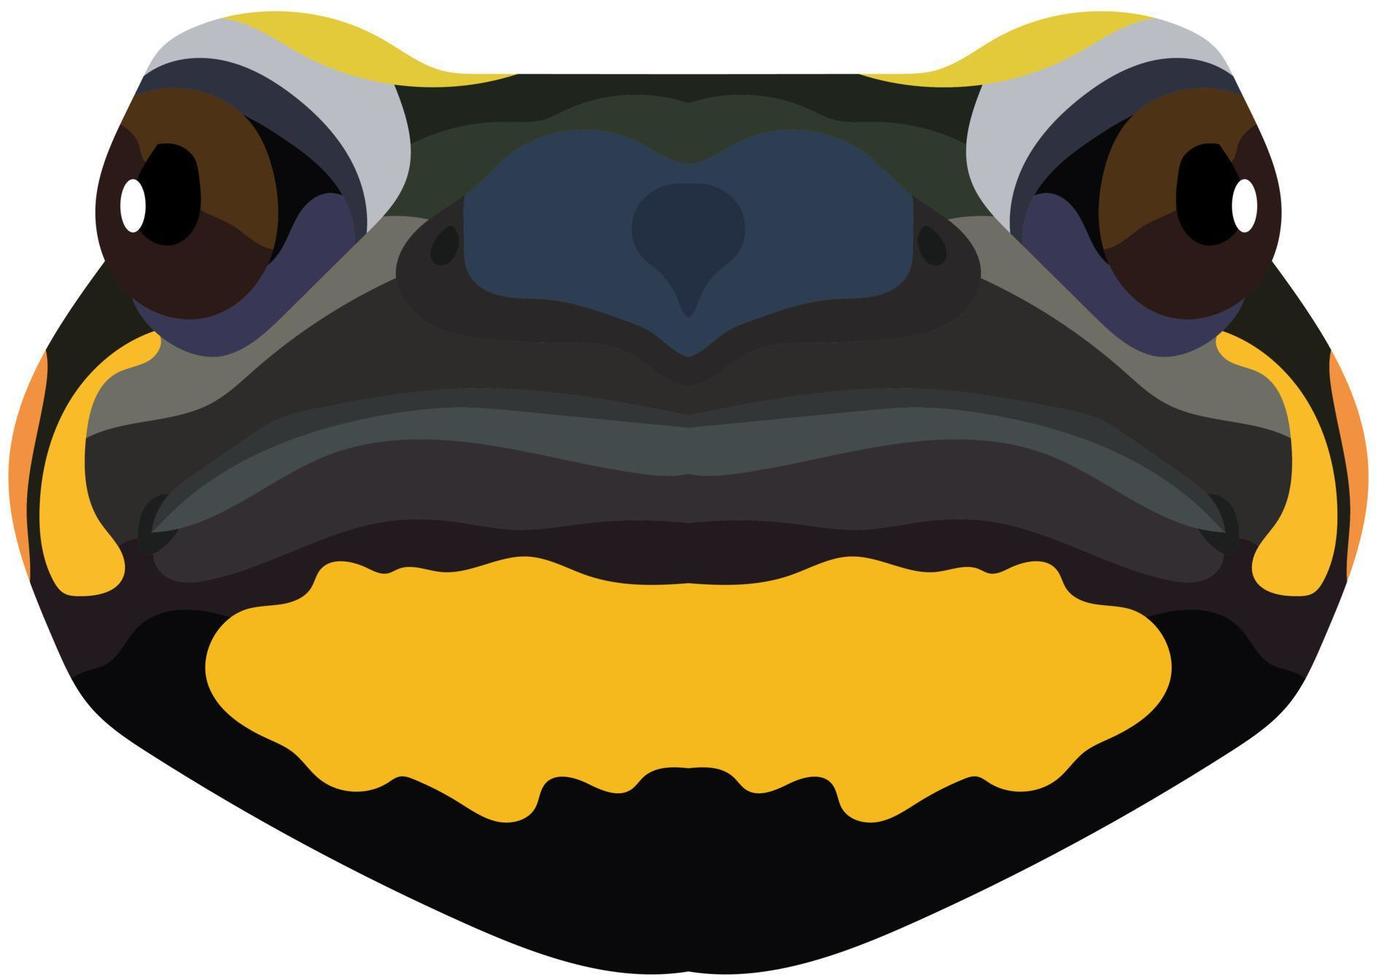 cara realista de una salamandra de fuego. el retrato de un anfibio se representa sobre un fondo blanco. gráficos vectoriales vector